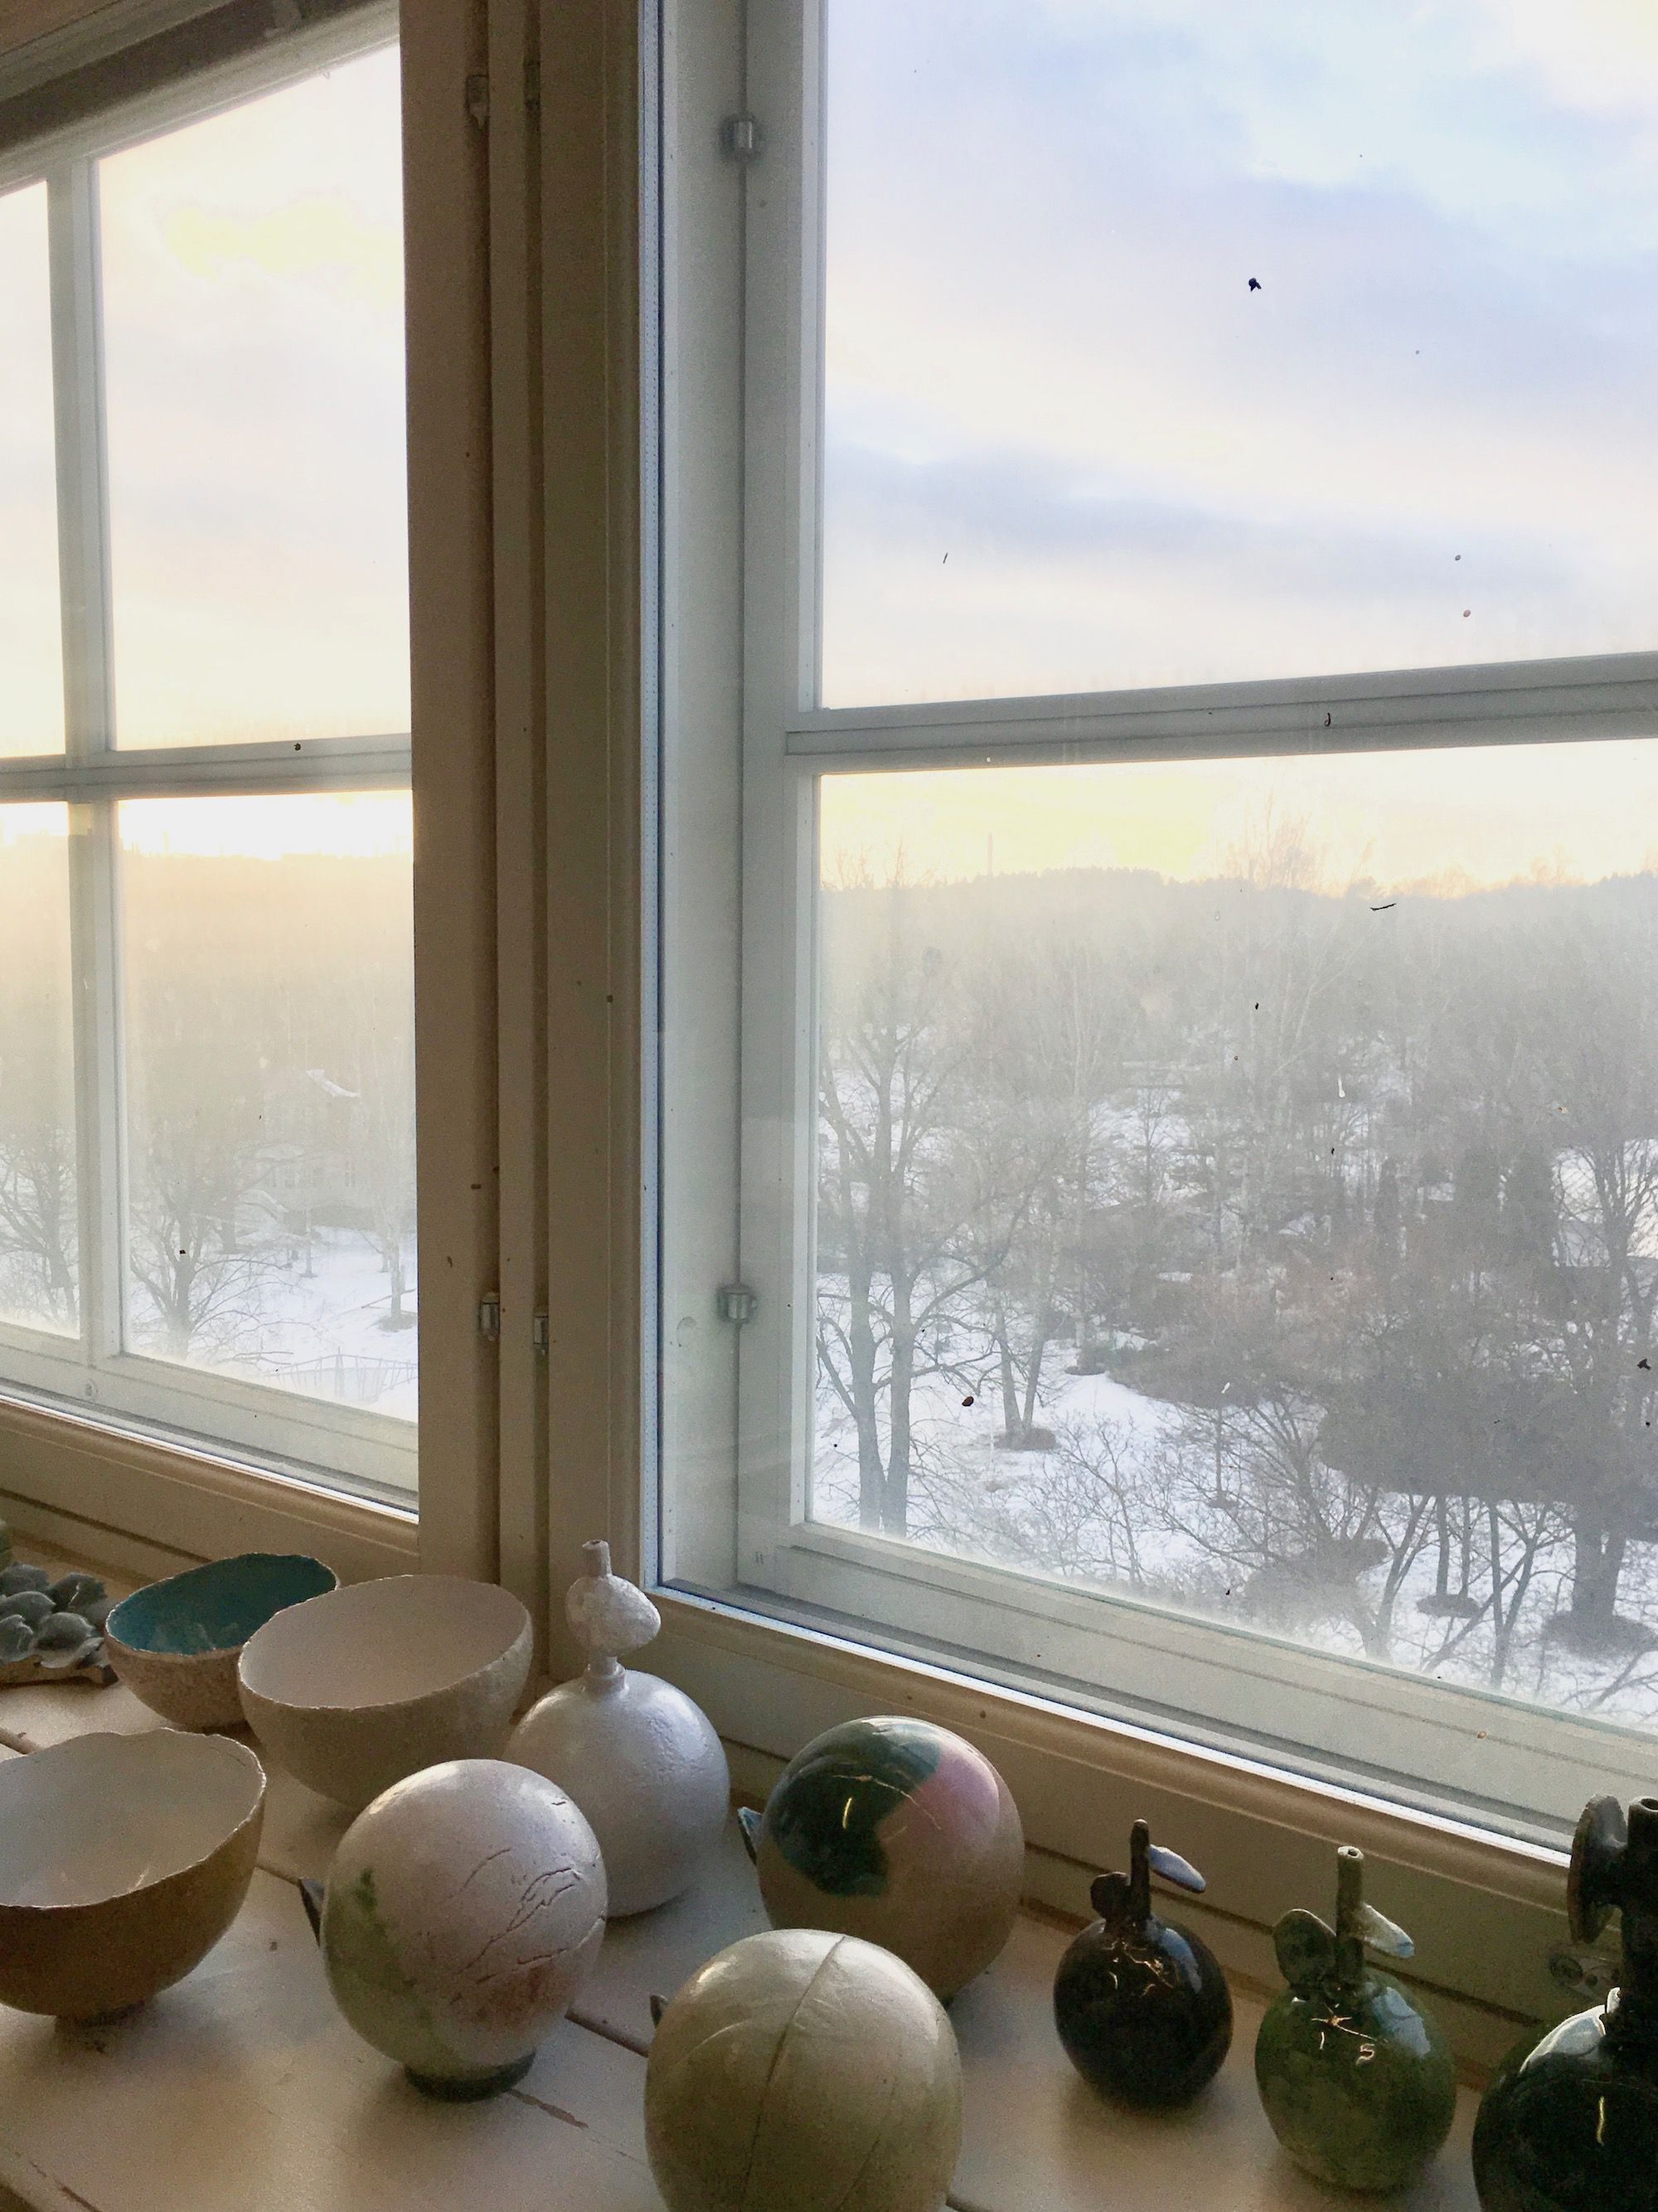 今年２月、ヘルシンキ、アラビアの一角にある石本藤雄のアトリエで。雲間から差し込んだ光を眺めつつ、この窓から石本さんが眺める四季の風景を想像した。